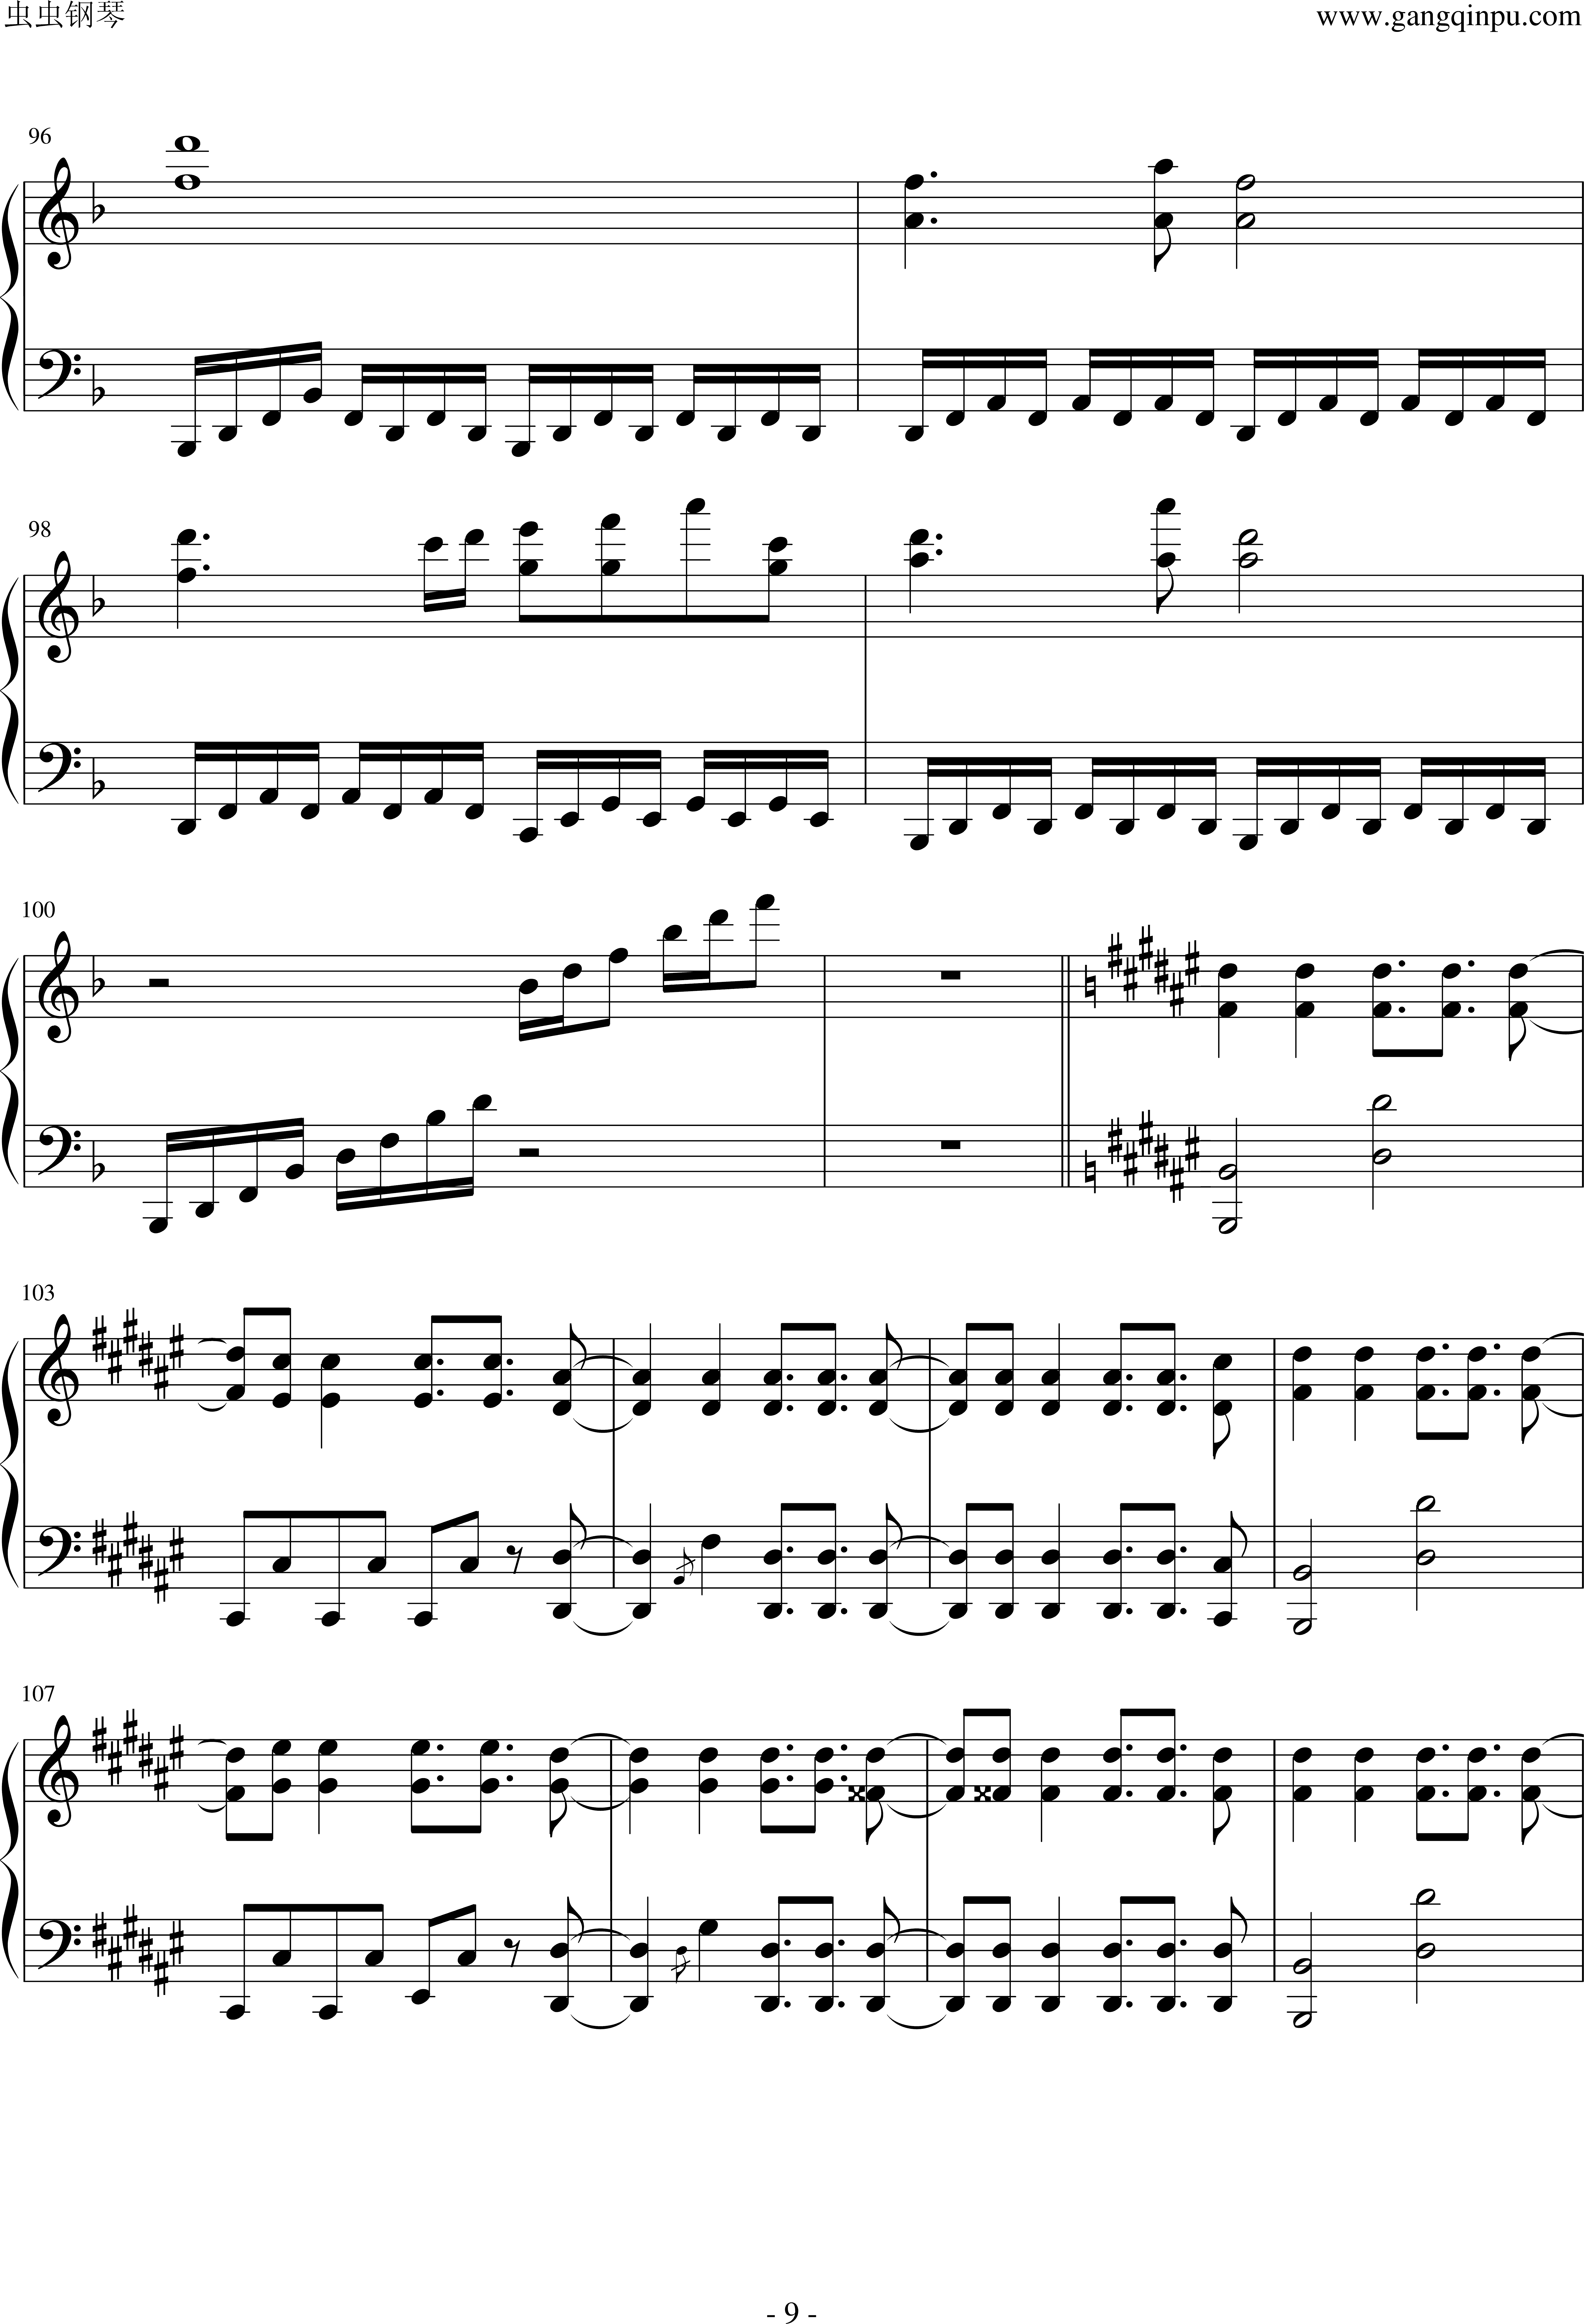 帕格尼尼随想曲24号吉他谱(PDF谱,独奏,指弹,古典吉他)_帕格尼尼(Niccolò Paganini)